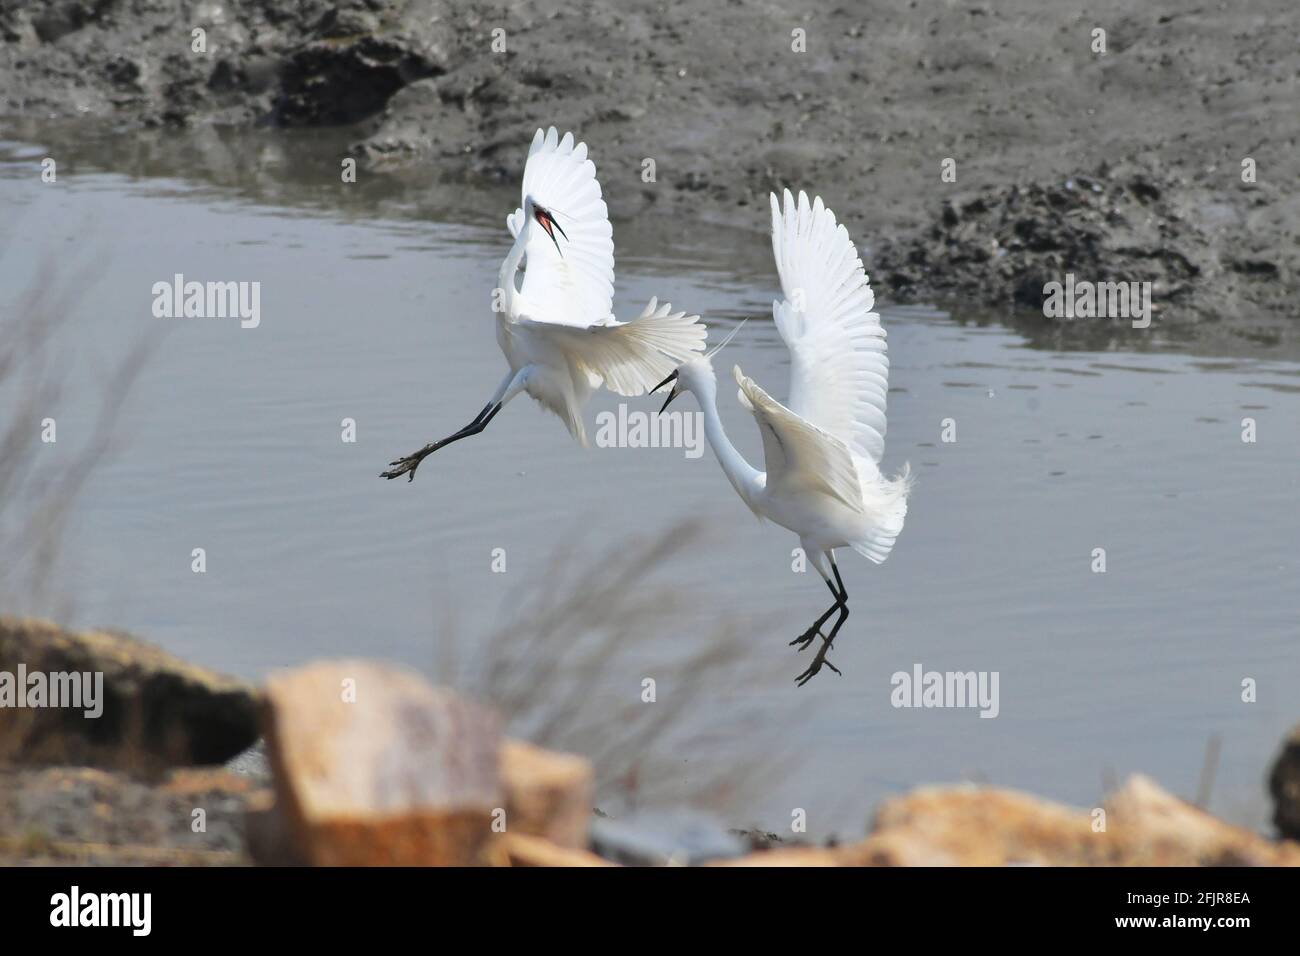 Qingdao, Qingdao, Chine. 26 avril 2021. Le 25 avril 2021, deux petits aigrettes 'dansant' dans la section Red Island du parc national de l'océan de la baie de Jiaozhou à Qingdao, en compétition pour le territoire de nourriture. Vers la fin du printemps, des dizaines de milliers de pluviers migrateurs se sont rendus au parc national de l'océan de la baie de Jiaozhou, dans la ville de Qingdao, province de Shandong, pour reconstituer la forme physique ou se reproduire en été, ajoutant une vitalité et une spiritualité infinies à cette belle ville côtière. grâce à la création de parcs marins et à l'organisation locale de protection de la faune, les bénévoles continuent de promouvoir Banque D'Images